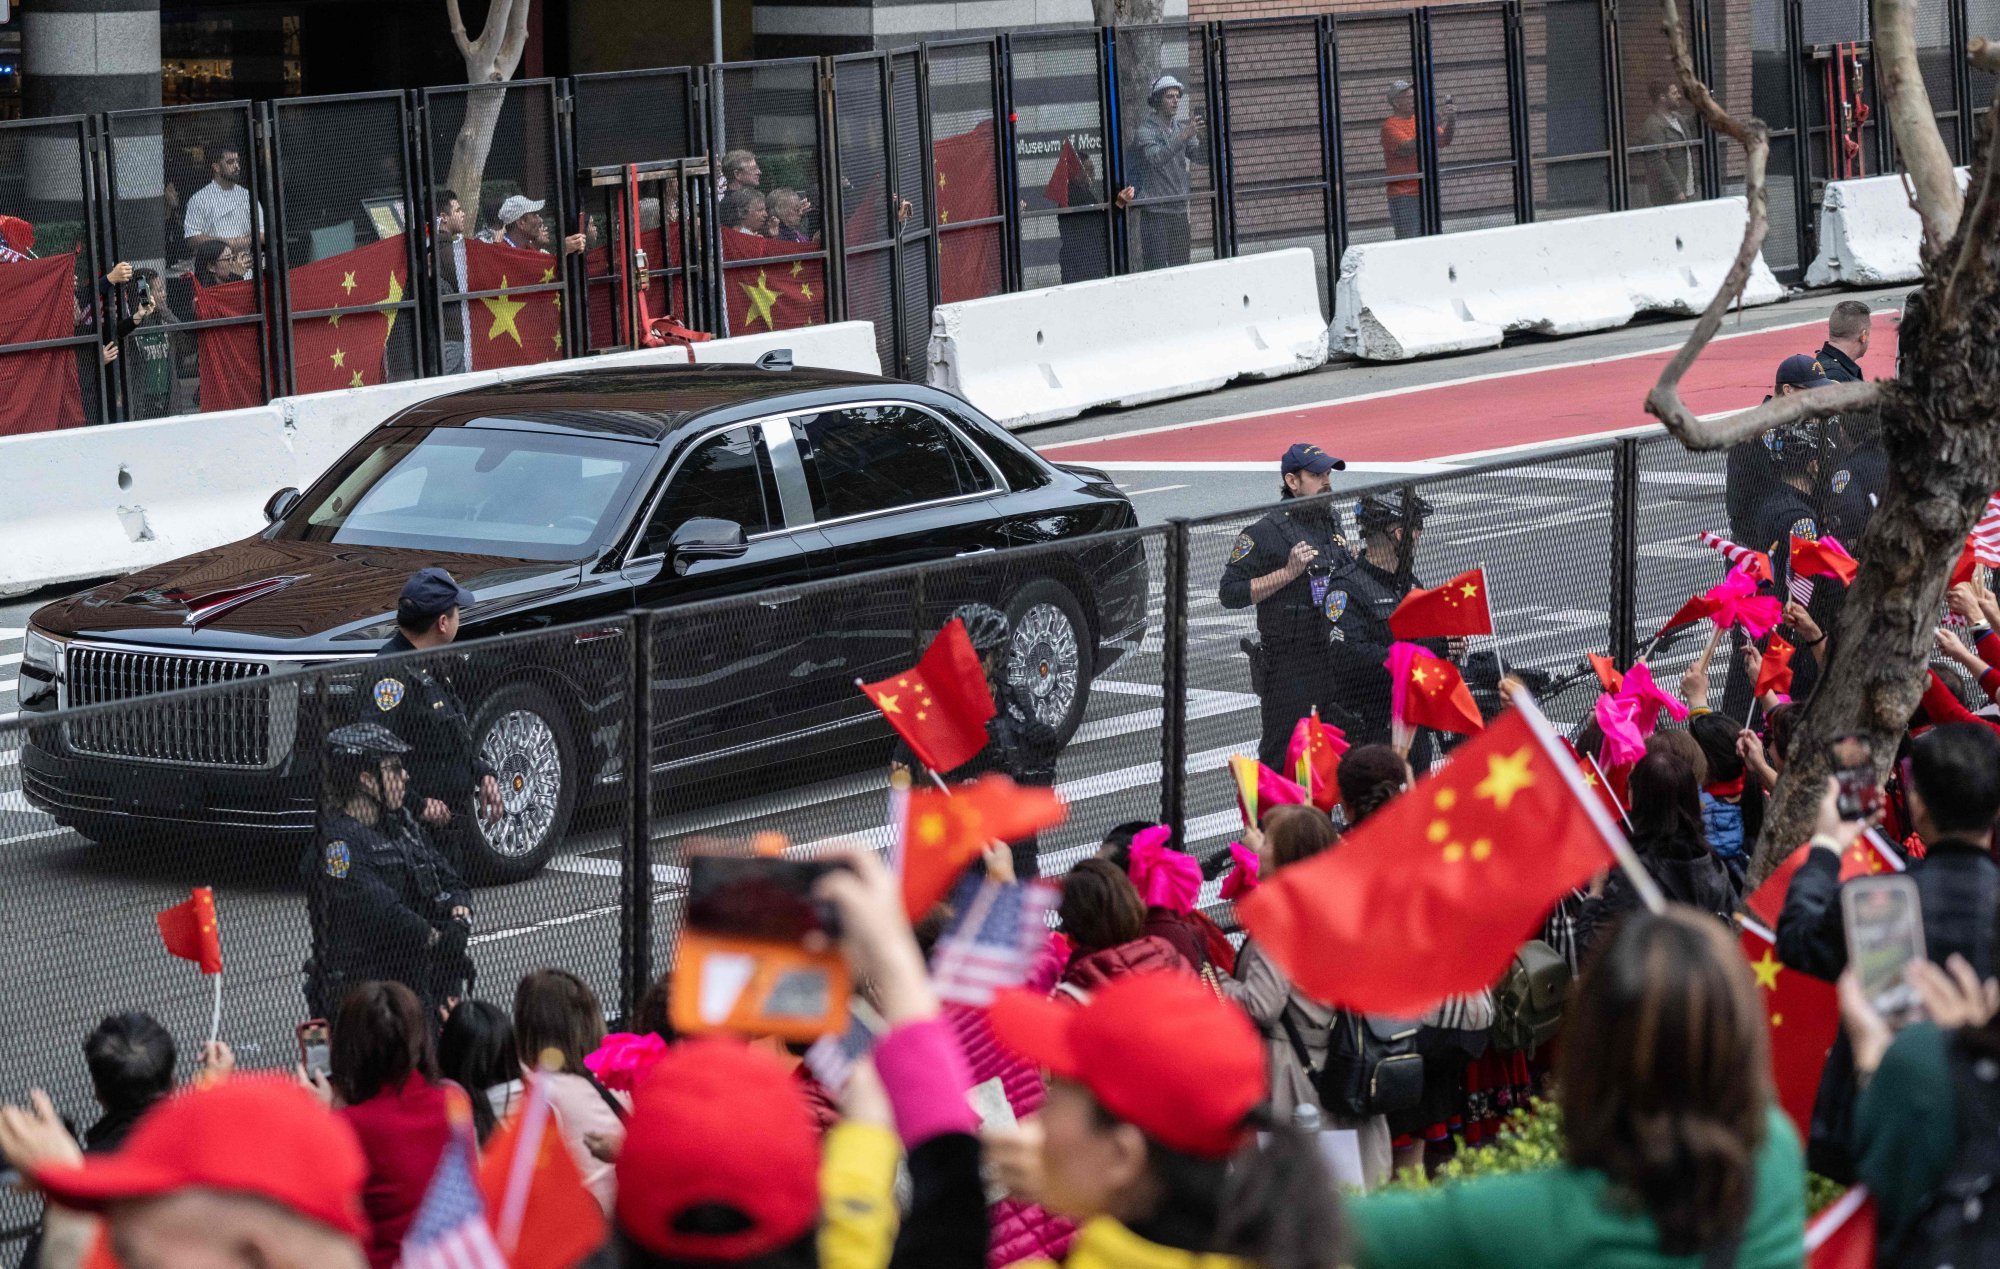 Cumbre de APEC: Manifestantes enfrentados cantan por Beijing o exigen justicia en China mientras los líderes se reúnen en San Francisco